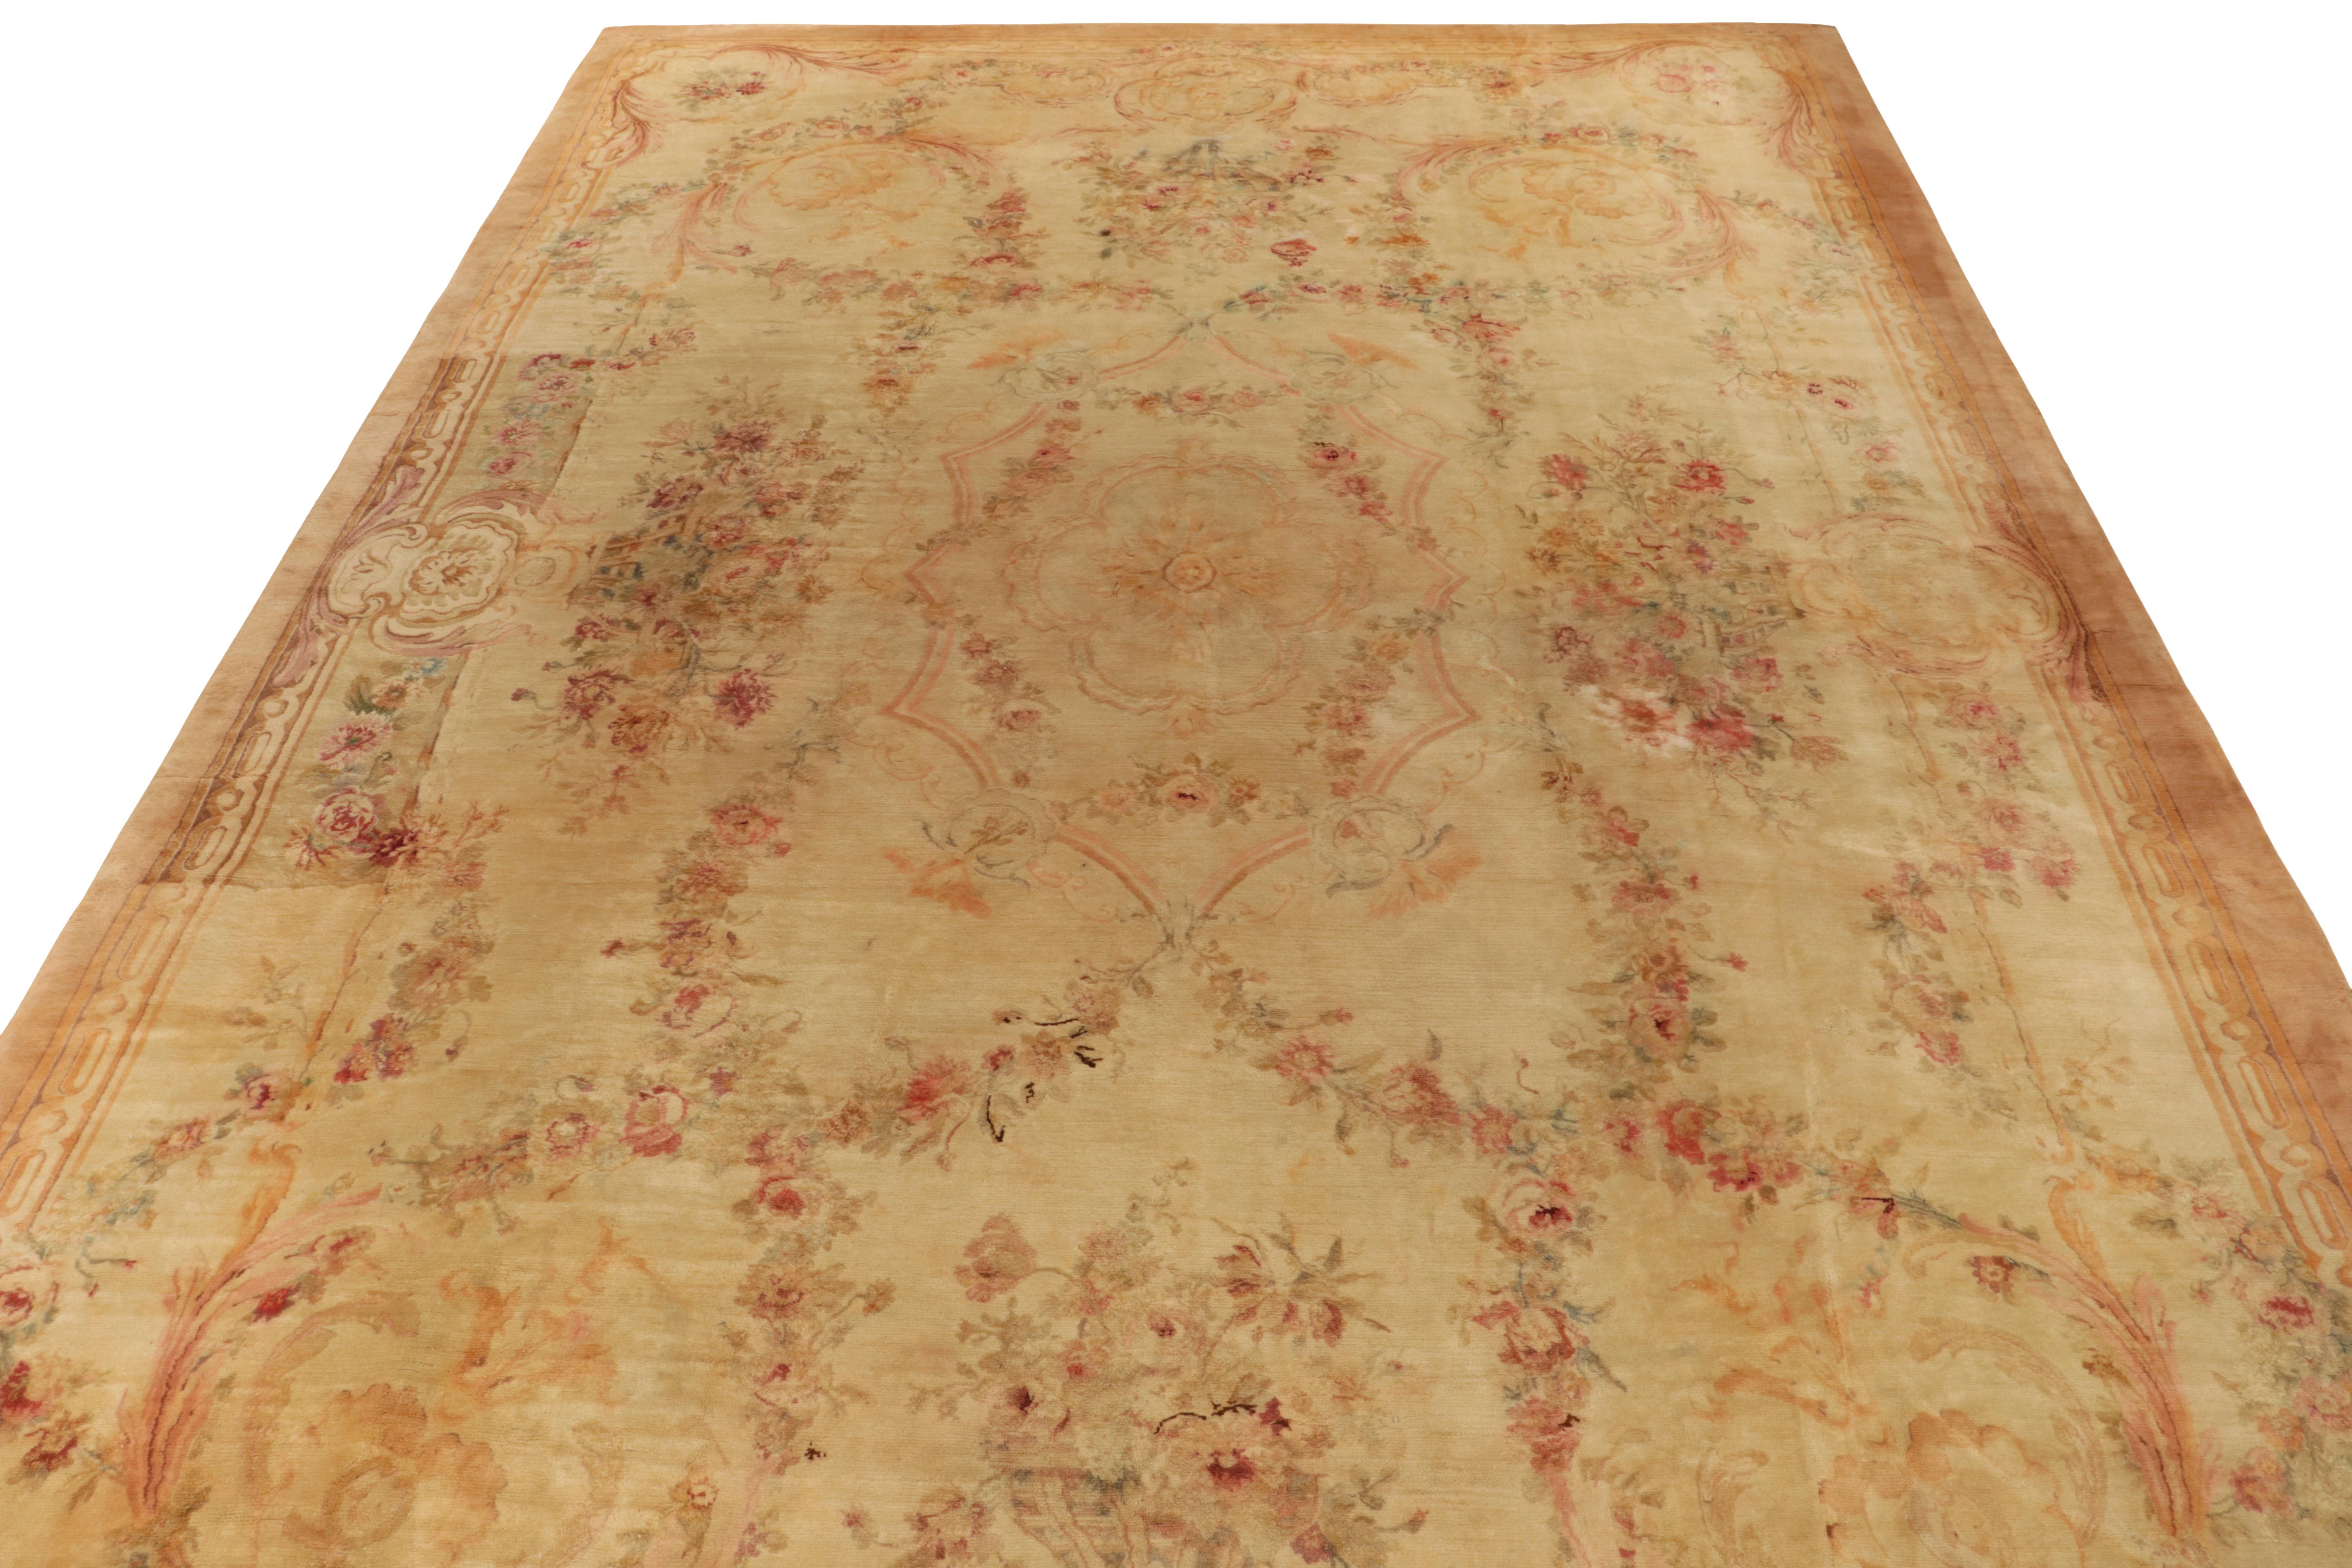 Dieser antike Savonnerie-Teppich im Format 14x22 ist handgeknüpft und ein Beispiel für die tadellose französische Handwerkskunst des späten 19. Dieser klassische Stil erfreut sich eines ausgedehnten floralen Musters in beruhigenden Beige- und